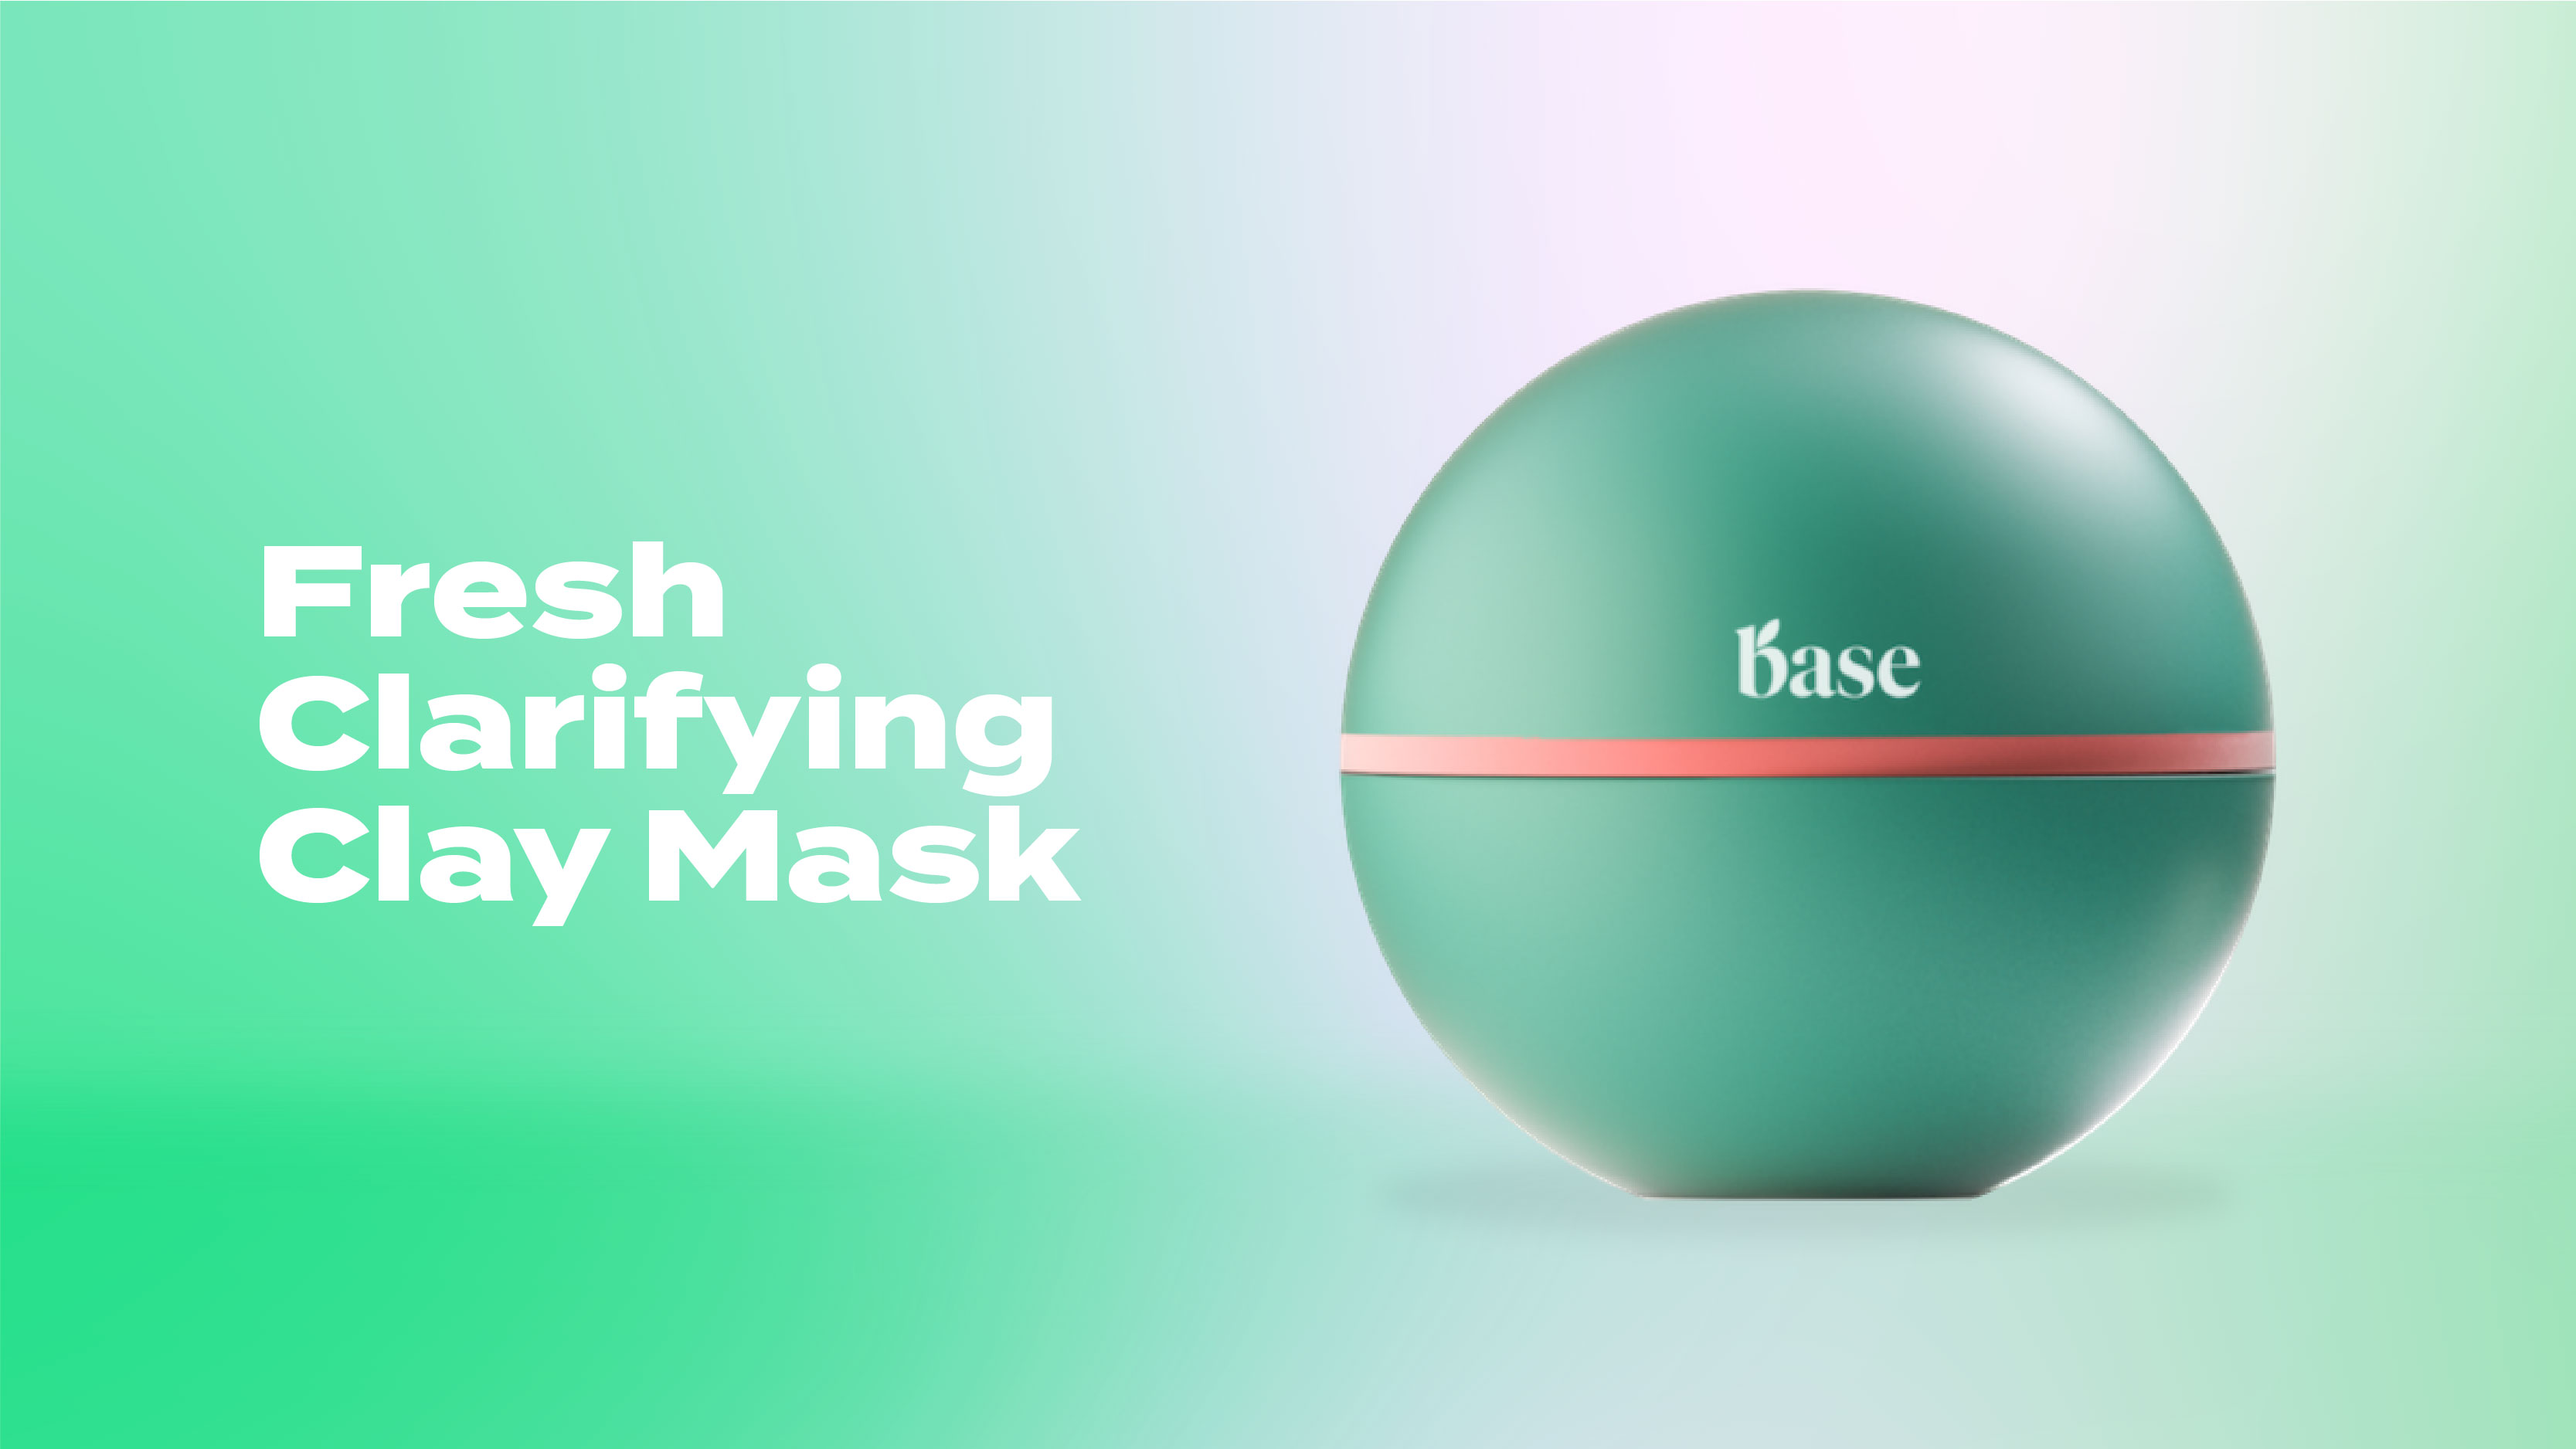 BASE fresh clarifying clay mask